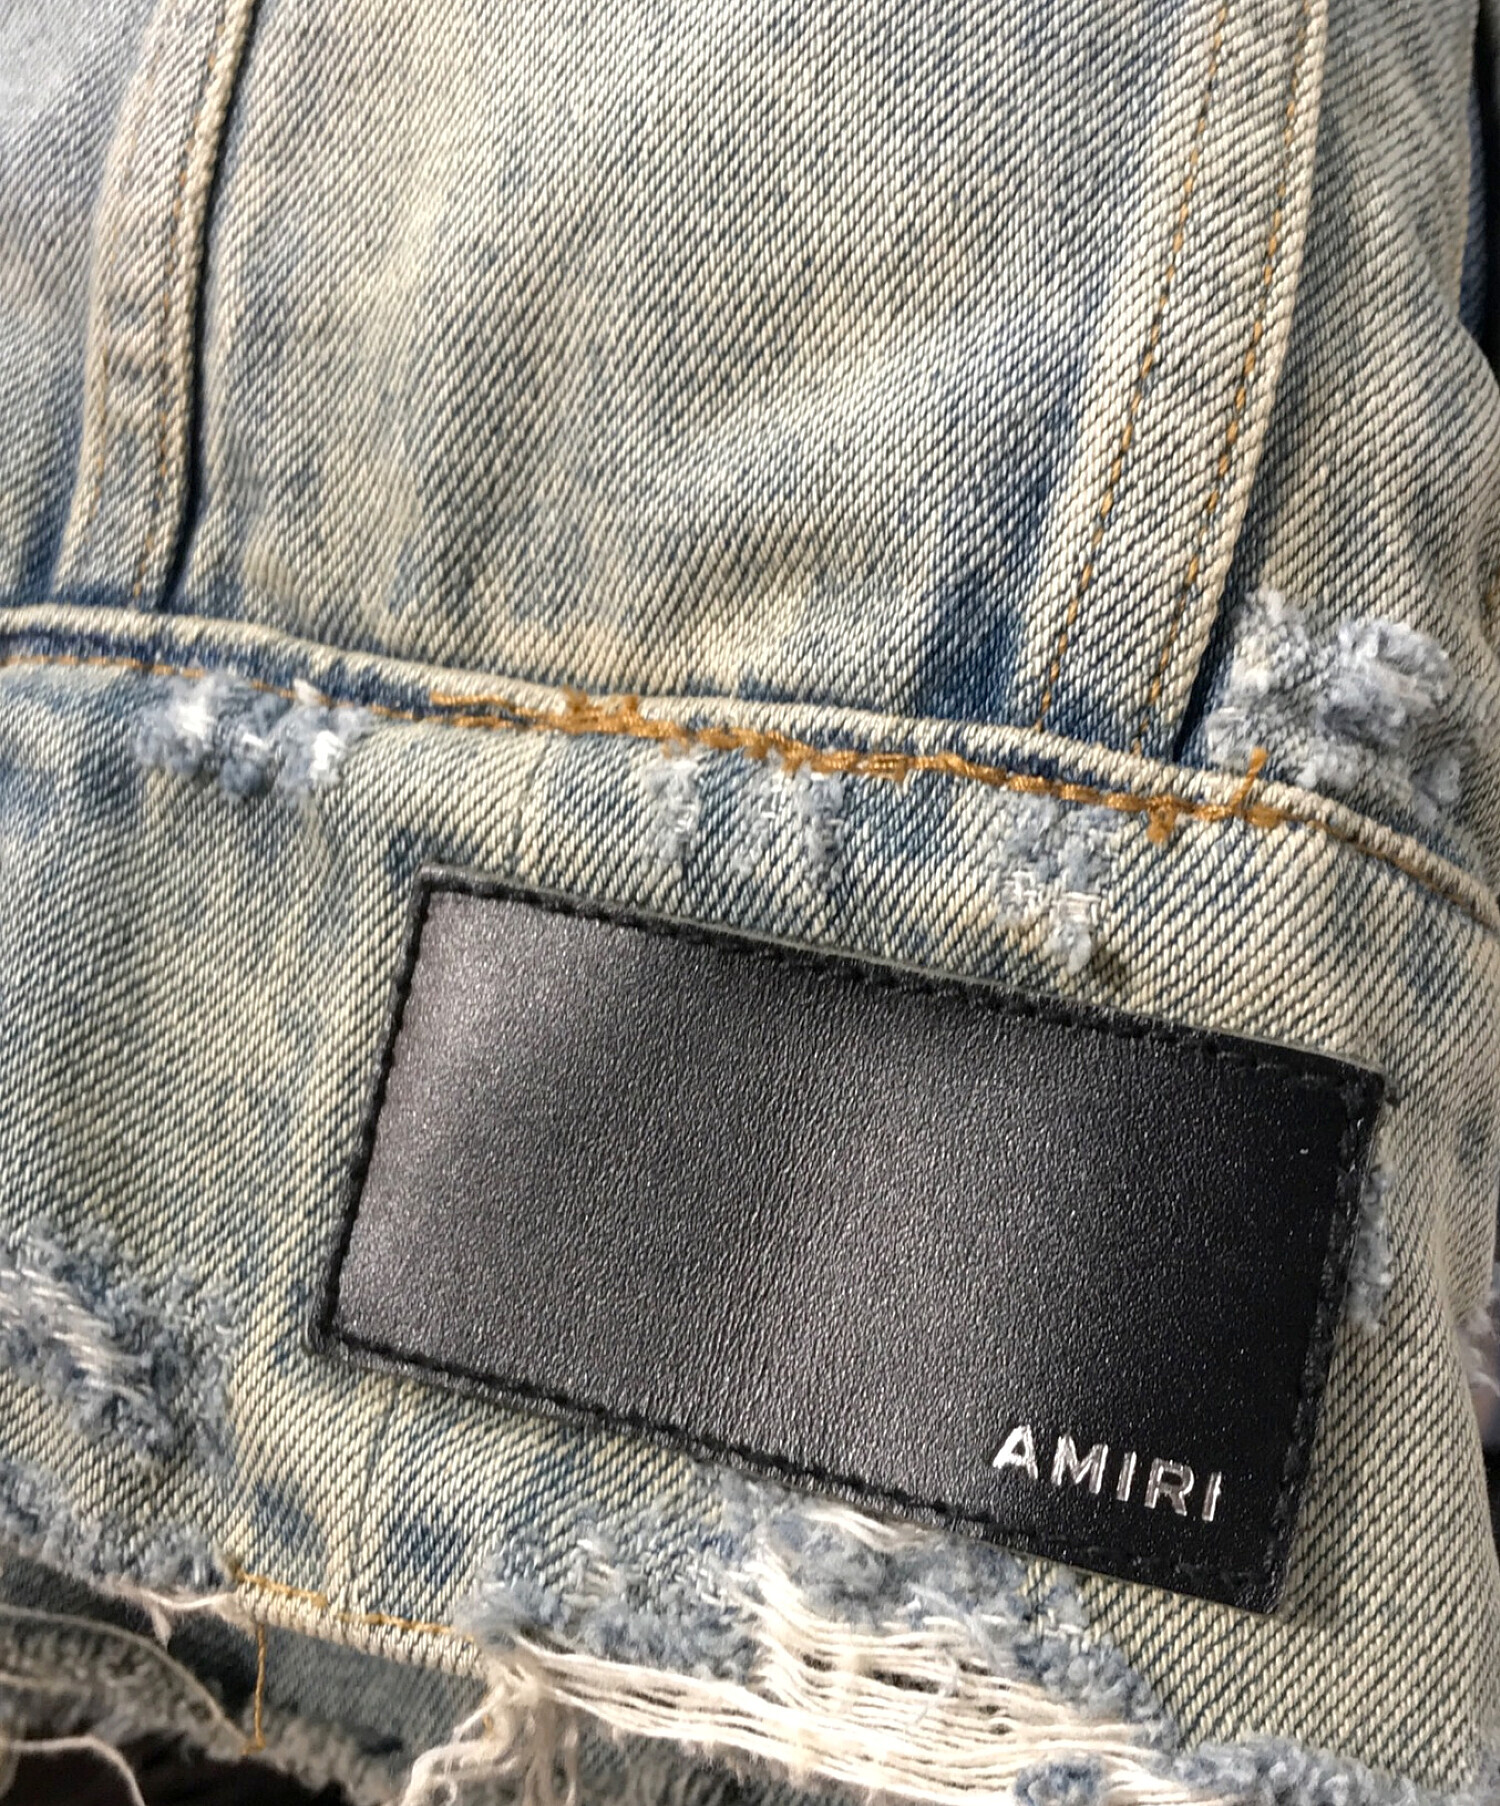 AMIRI (アミリ) リバーシブルボンバージャケット カーキ×ブルー サイズ:XS